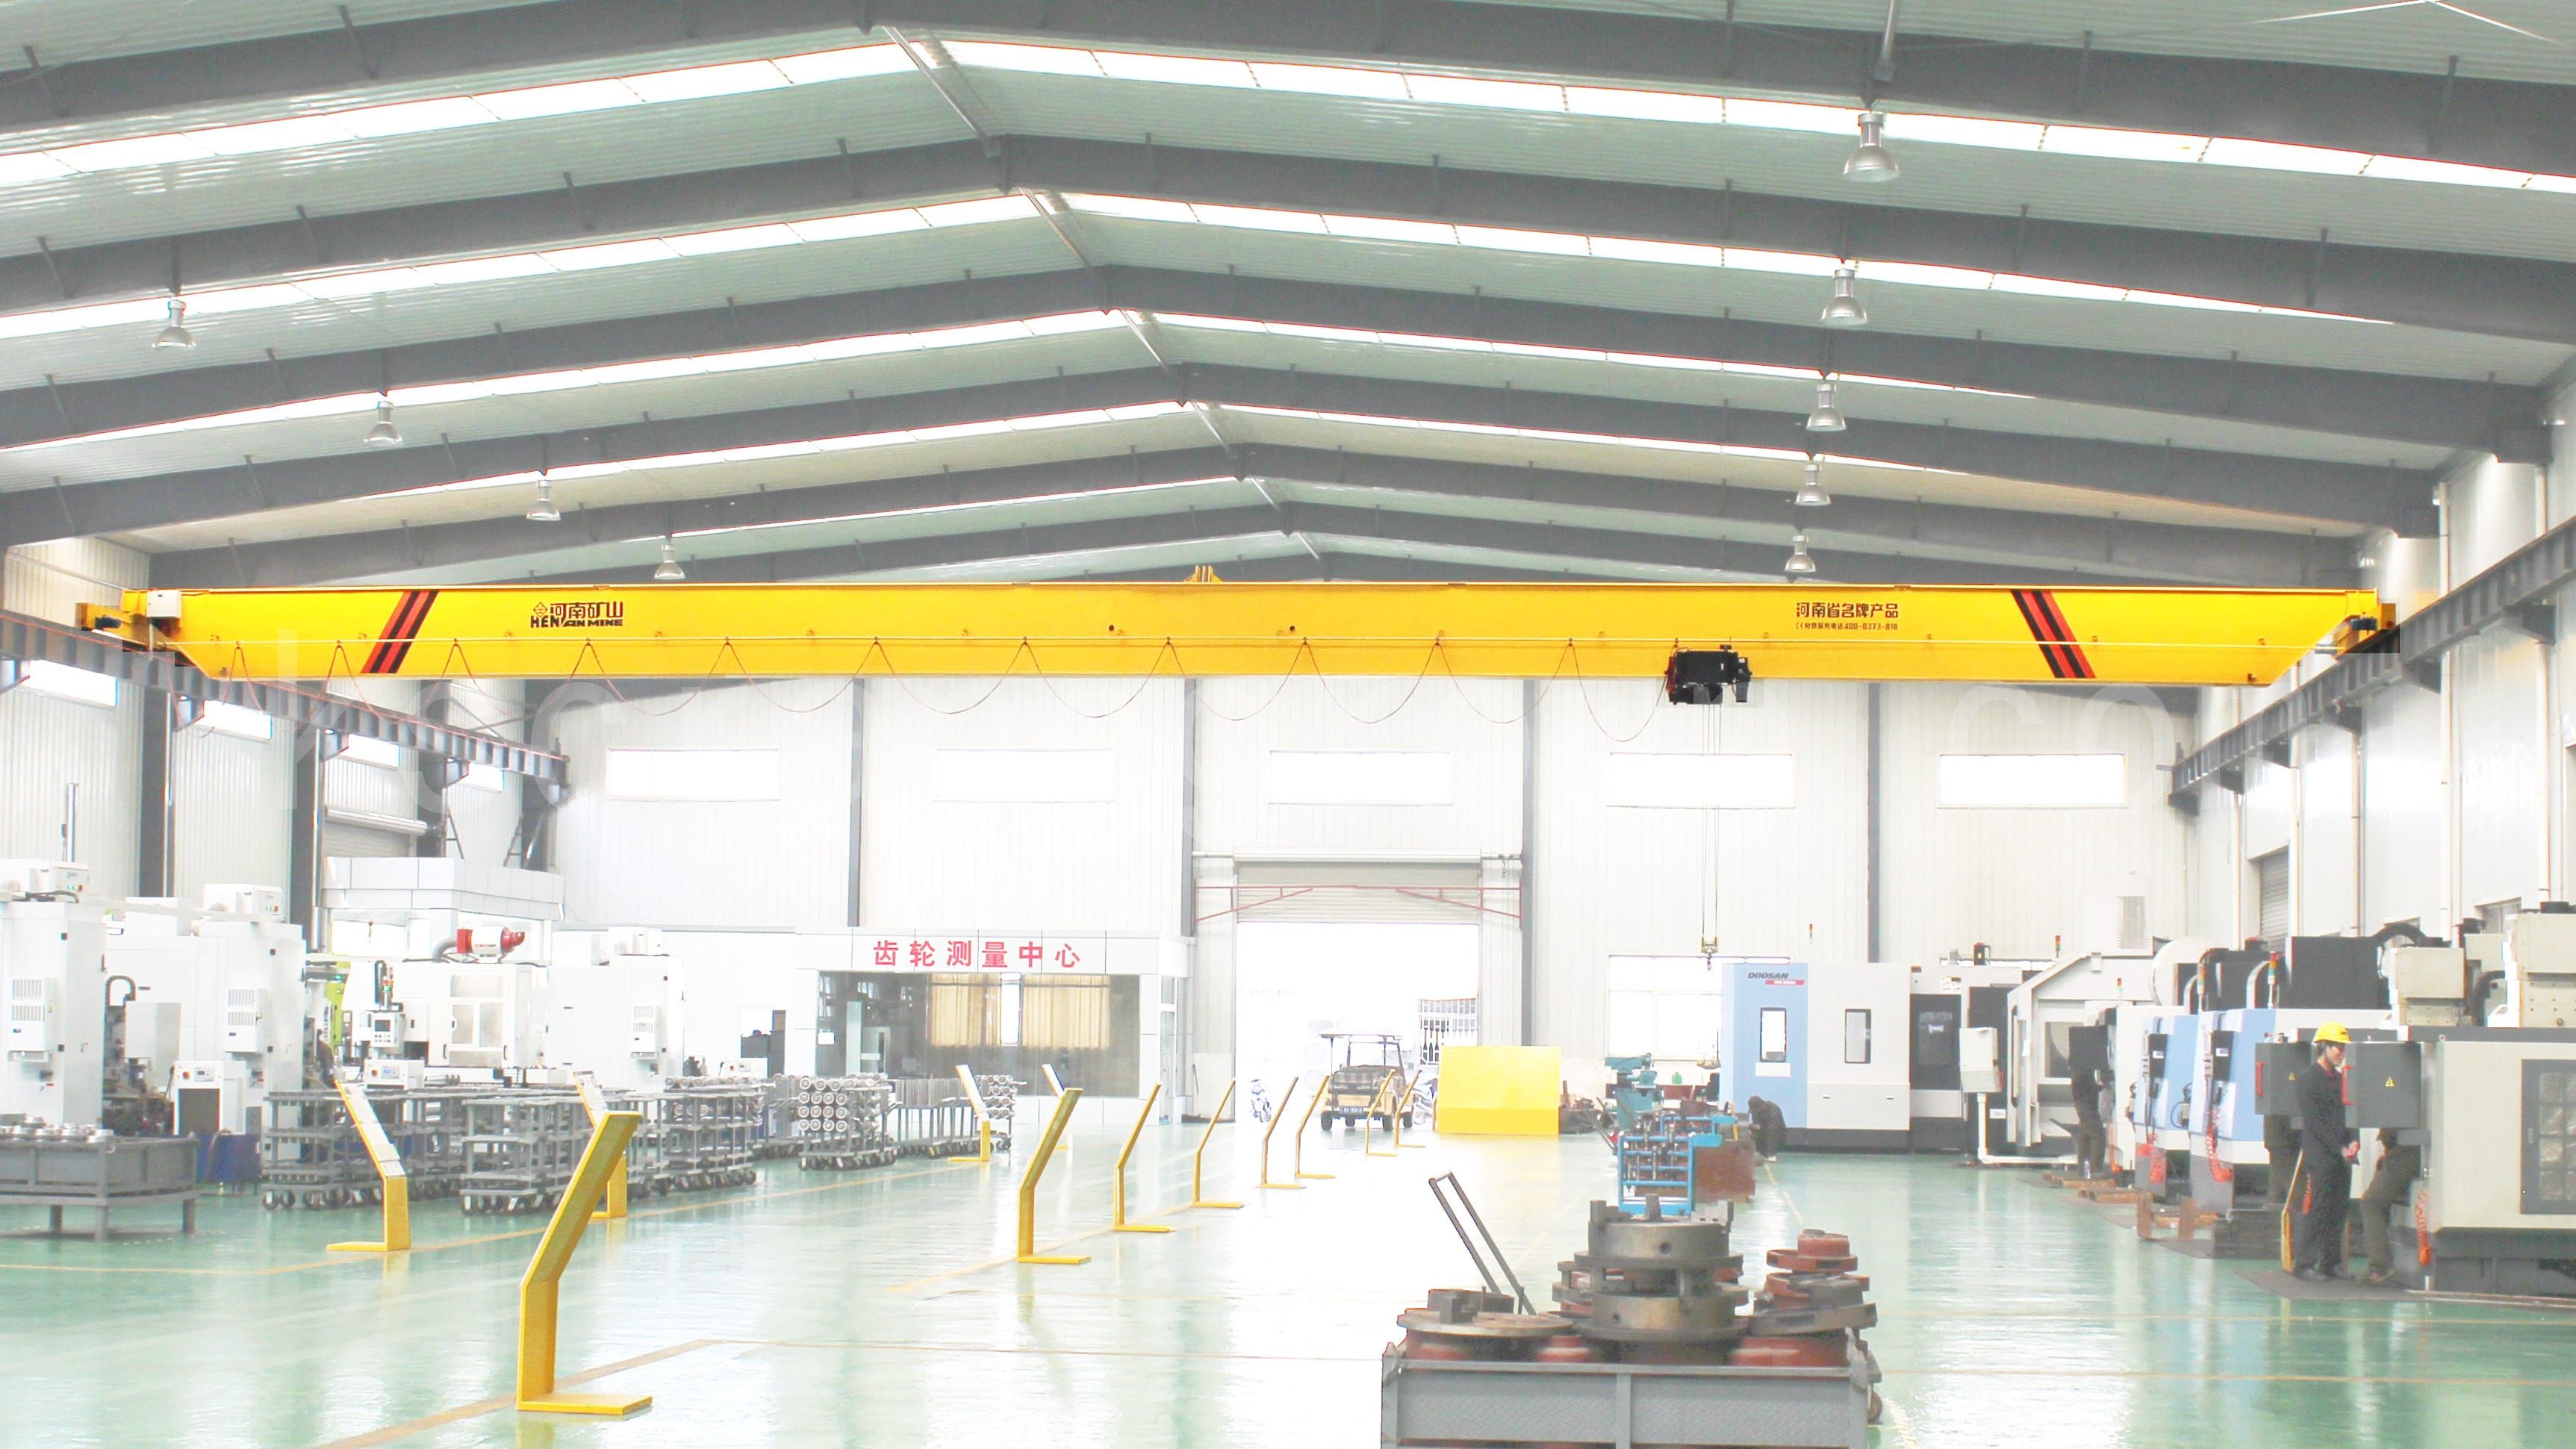 single-girder-eot-crane-manufacturer-in-china-kuangshan-crane